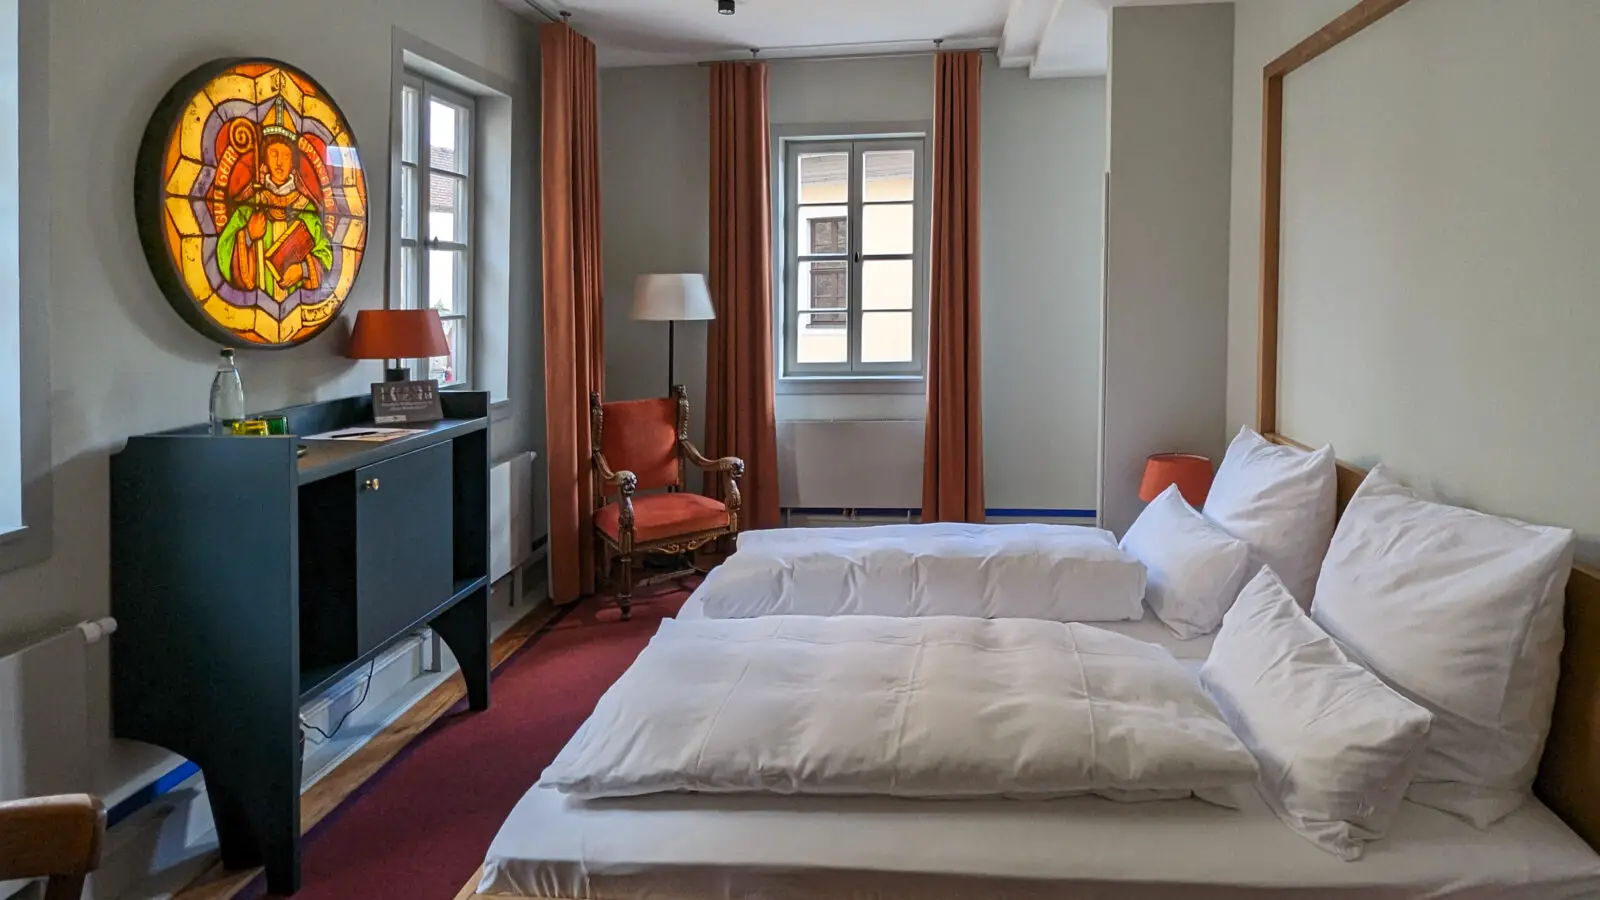 Hotelempfehlung für Naumburg, stilvoll übernachten in Naumburg, Pension Alter Bischofshof Naumburg